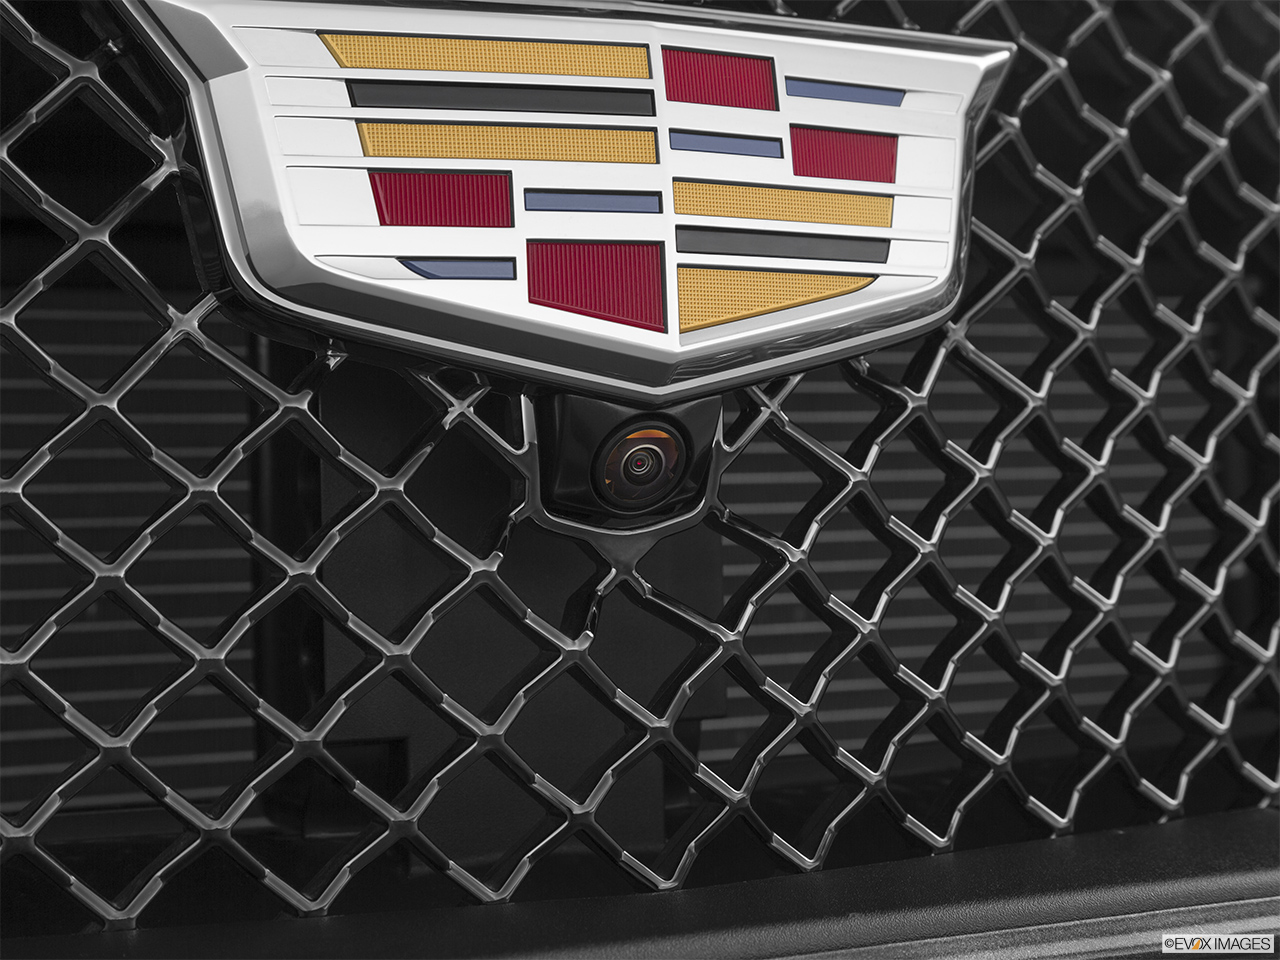 2019 Cadillac CT6-V Base Exterior Bonus Shots (no set spec) 